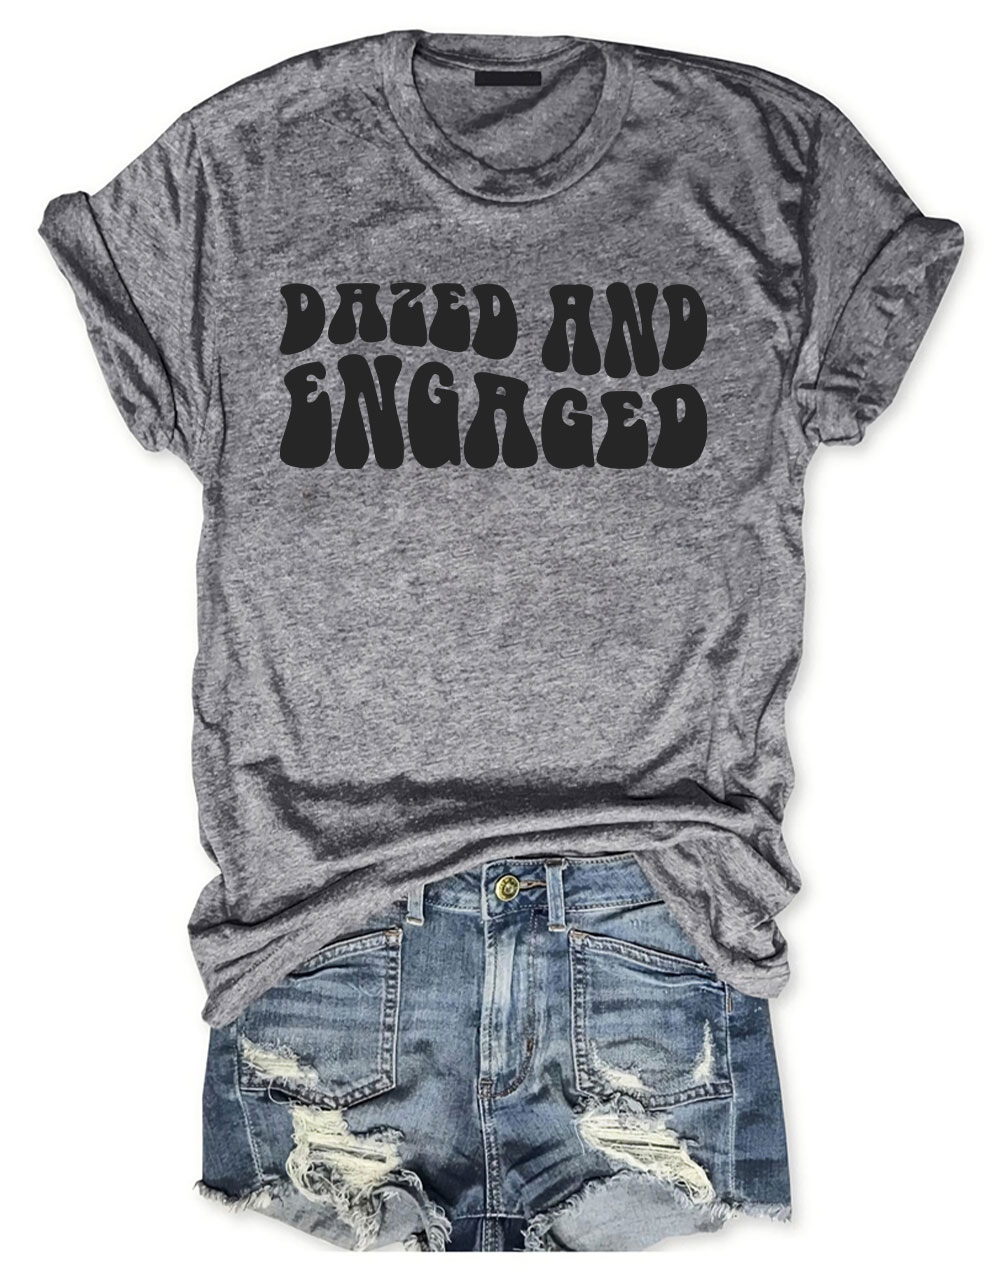 Dazed and Engaged T-Shirt